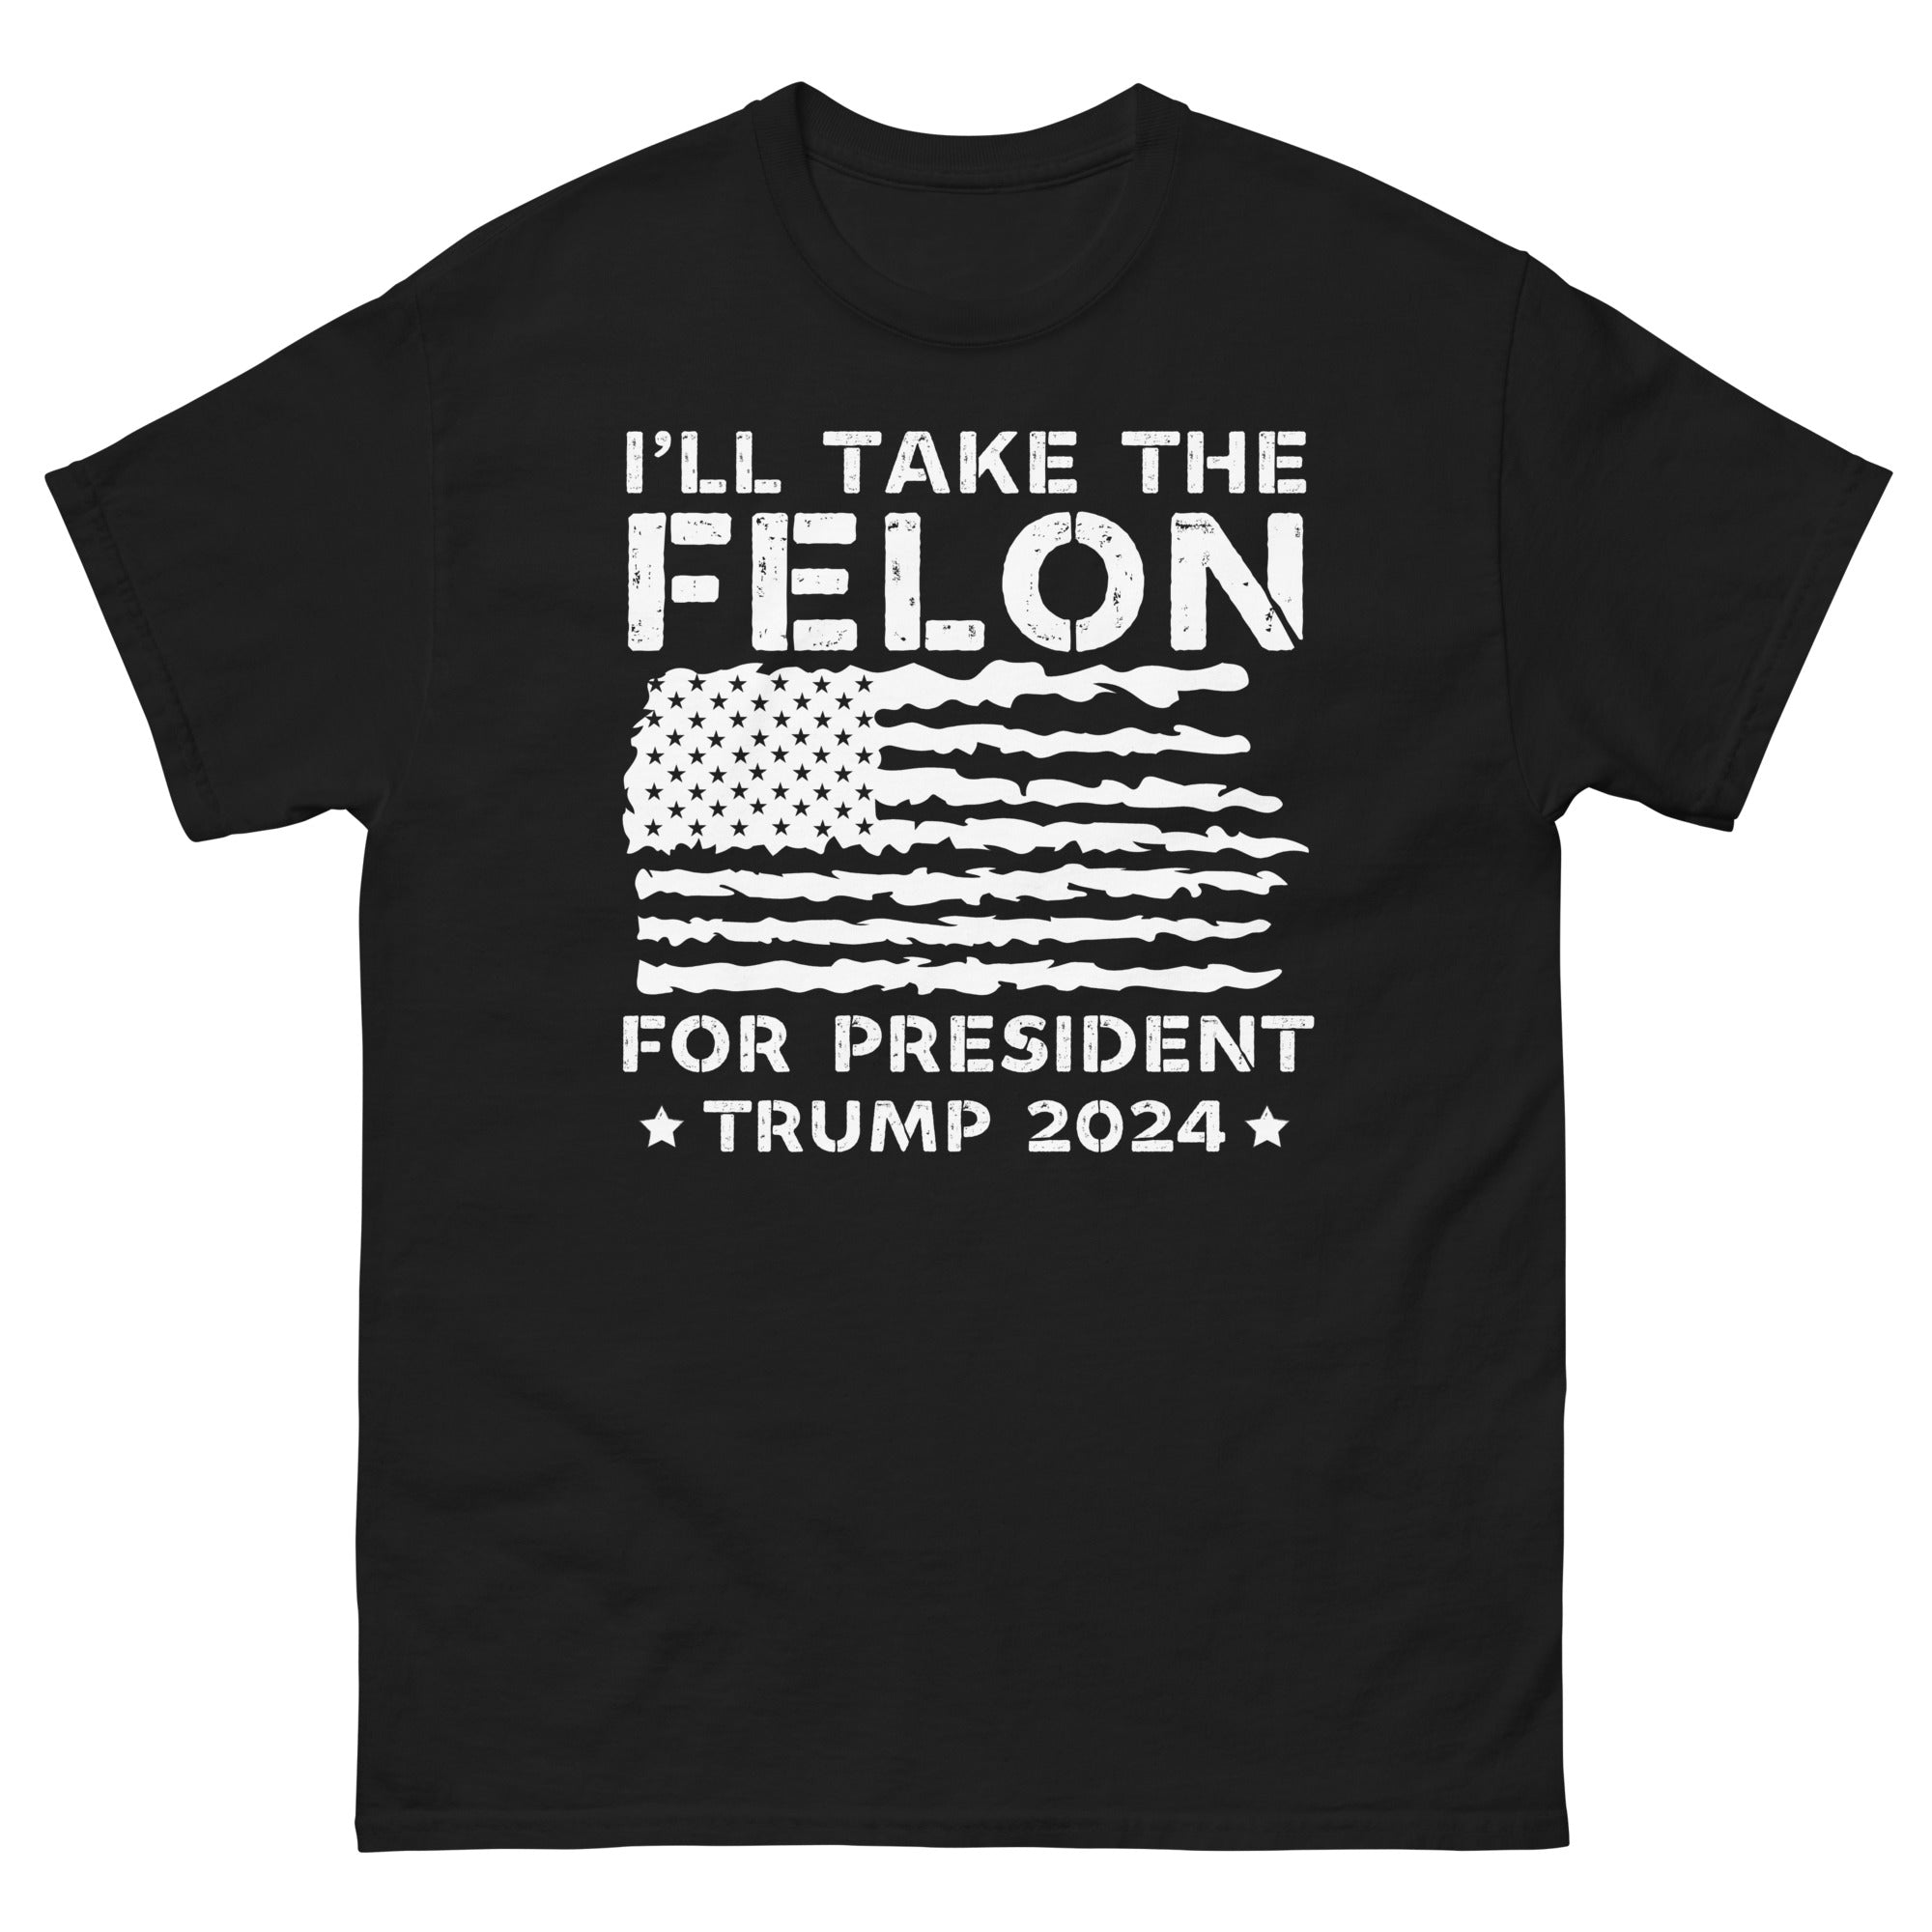 Vote Felon 2024, Presidente condenado, Camisa Trump 2024, Regalos republicanos, Camisa electoral, Camiseta republicana, Camiseta política, Camiseta divertida